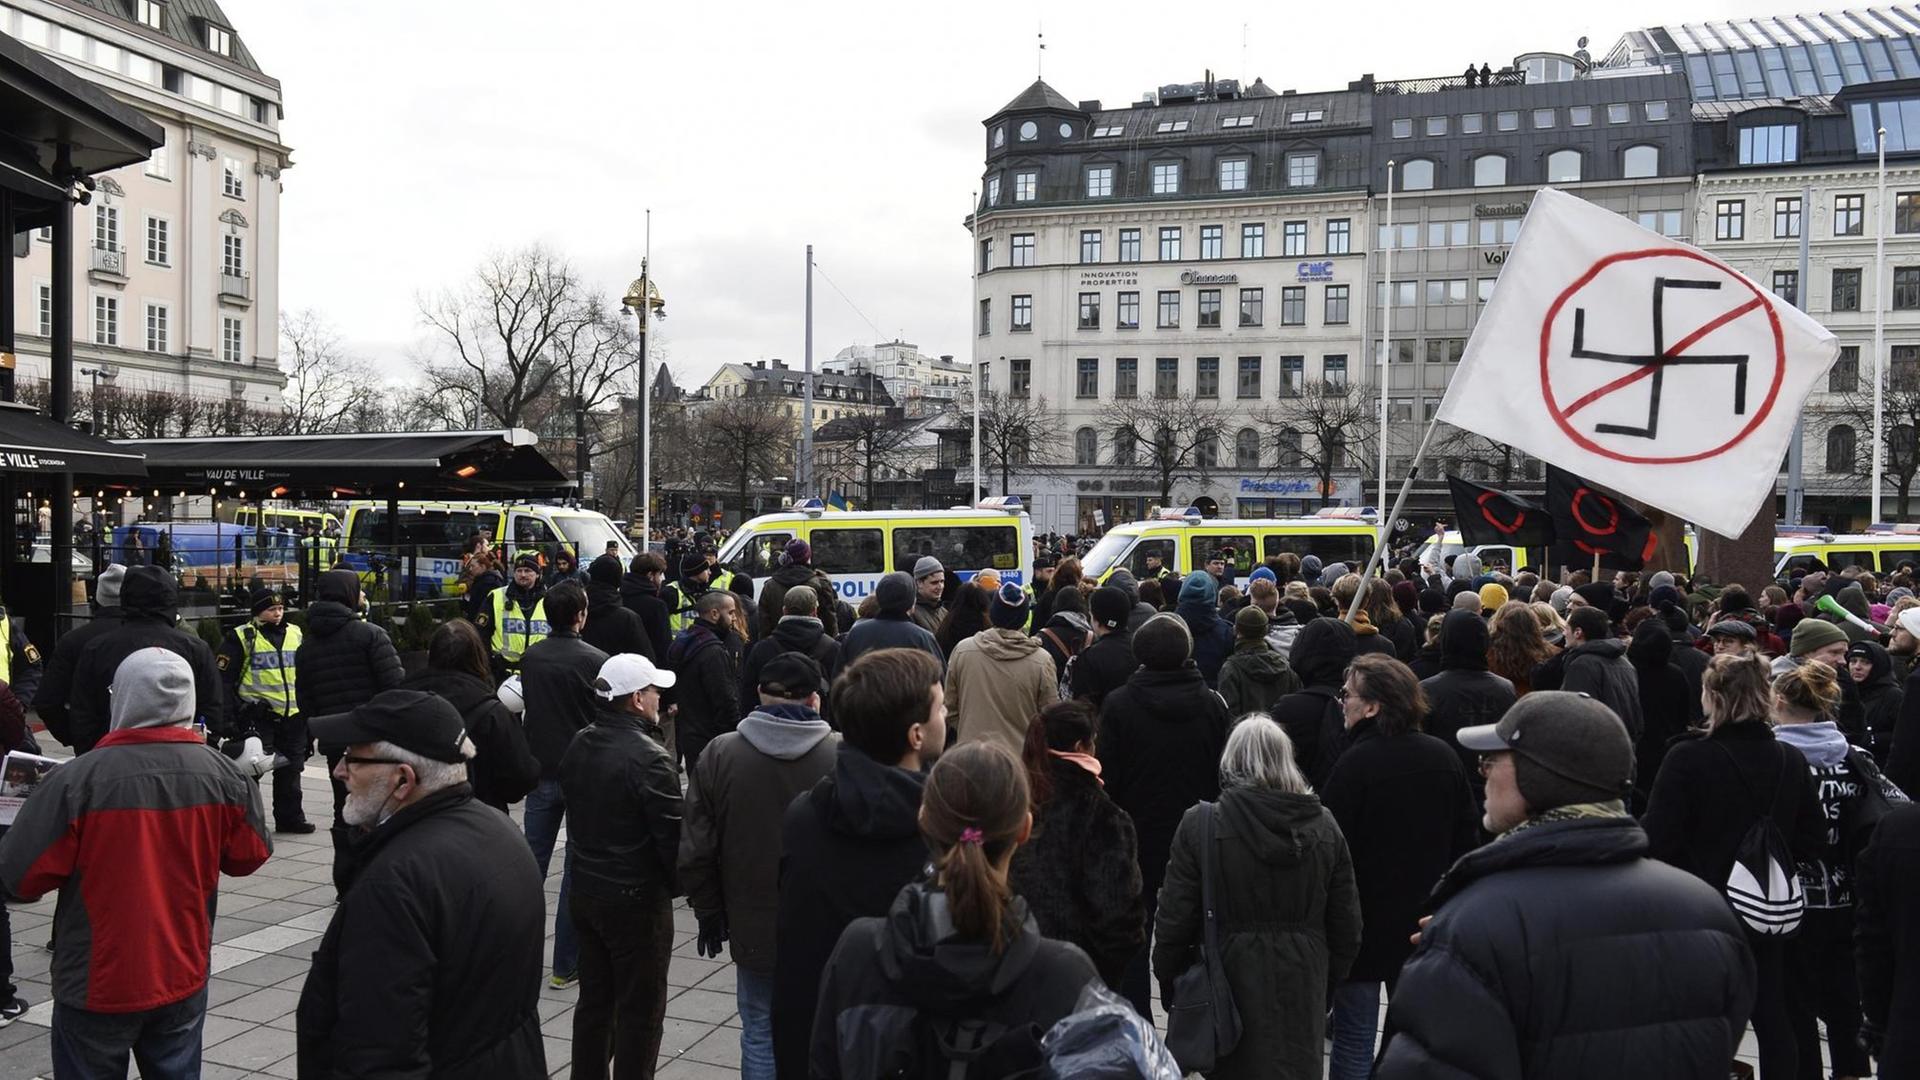 Auf einem Platz in Stockholm demonstrieren Menschen gegen Rassismus und Fremdenfeindlichkeit. Ein Banner mit einem durchgestrichenen Hakenkreuz wird hochgehalten.